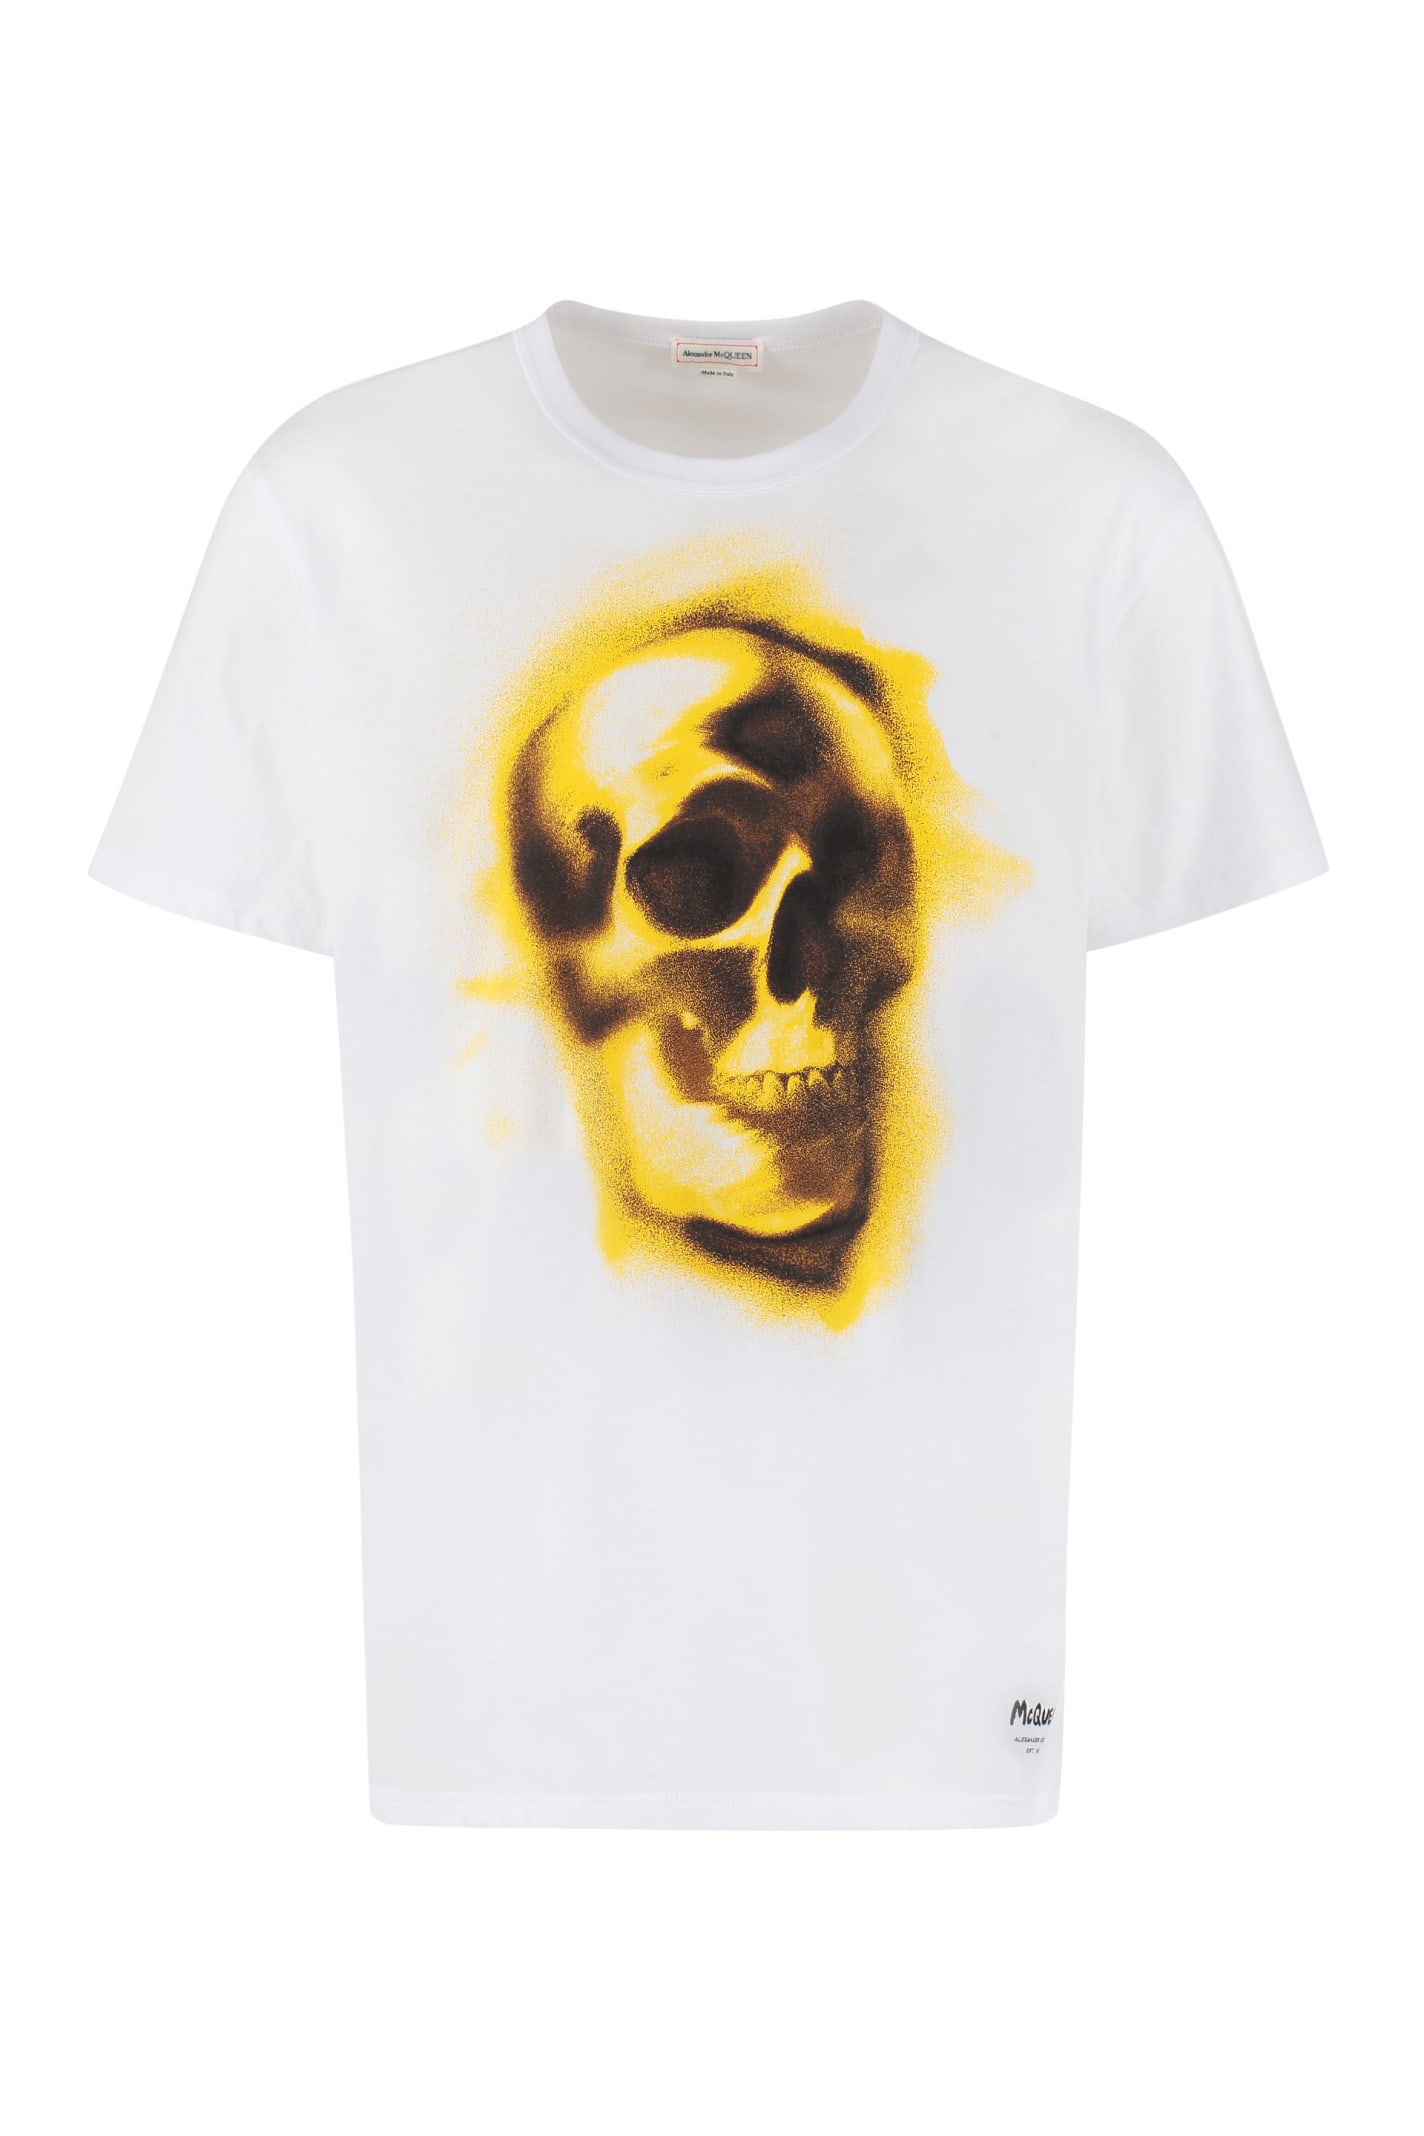 Alexander McQueen Printed Cotton T-shirt